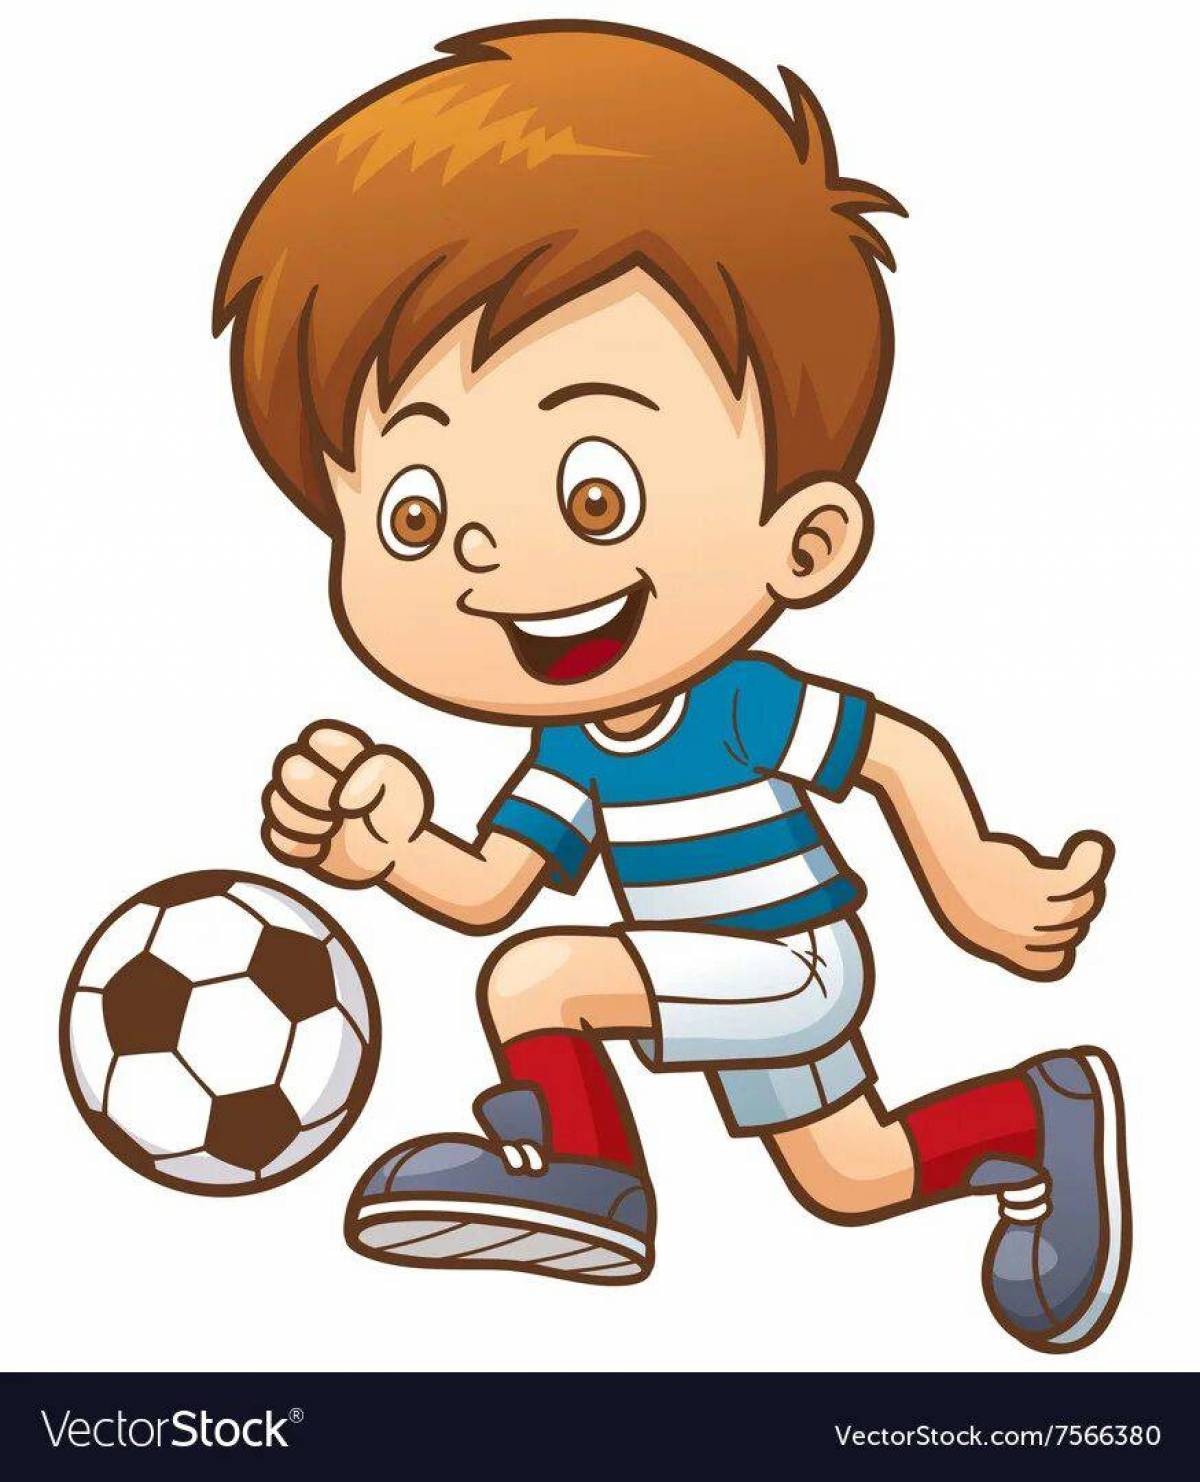 Футболист мальчик #34